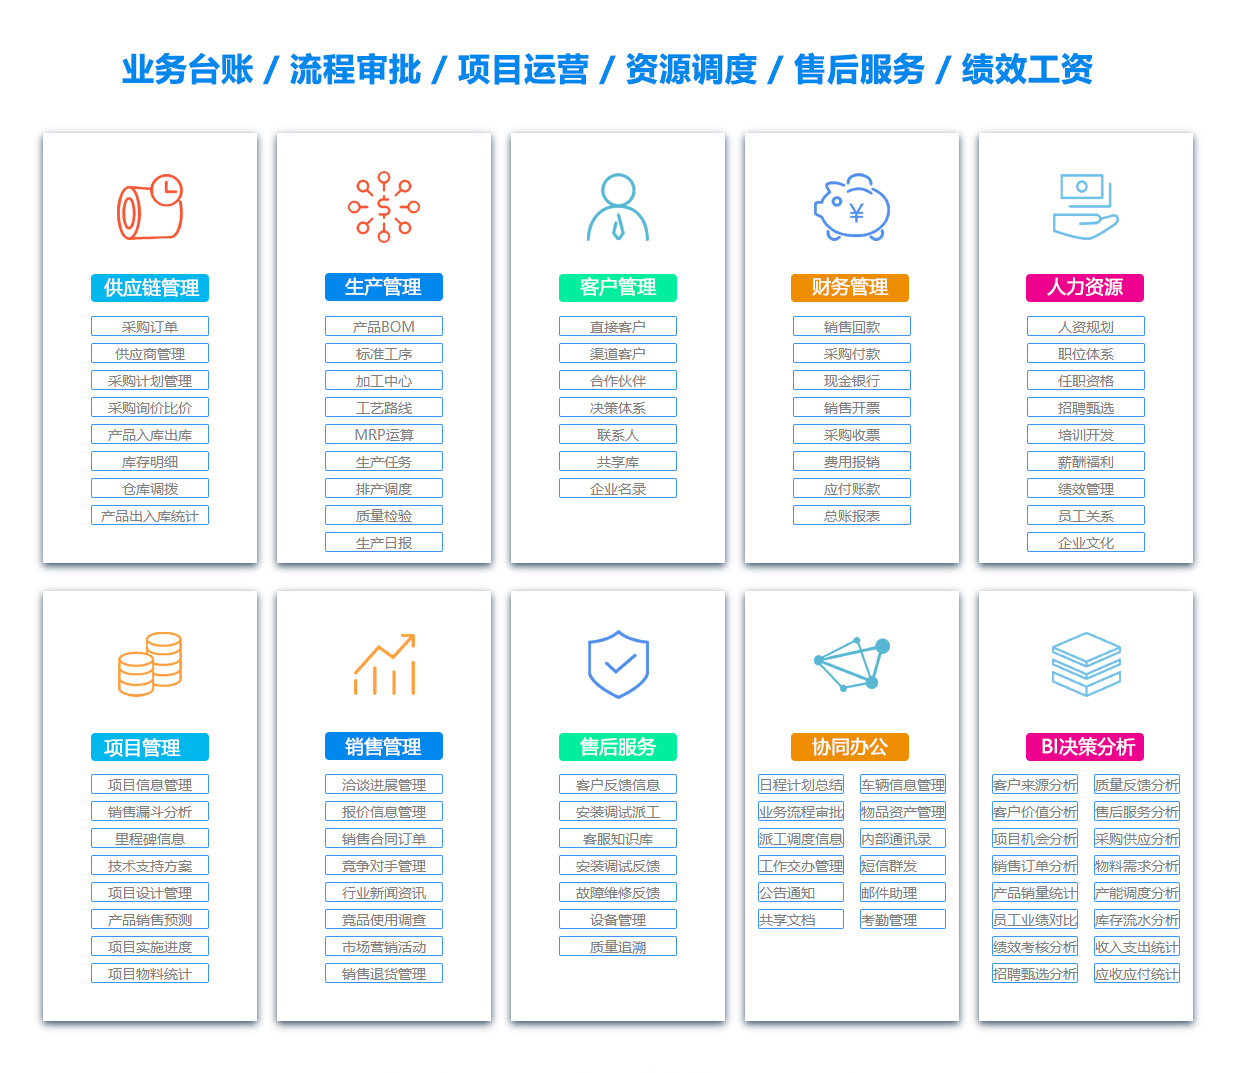 郑州BOM:物料清单软件